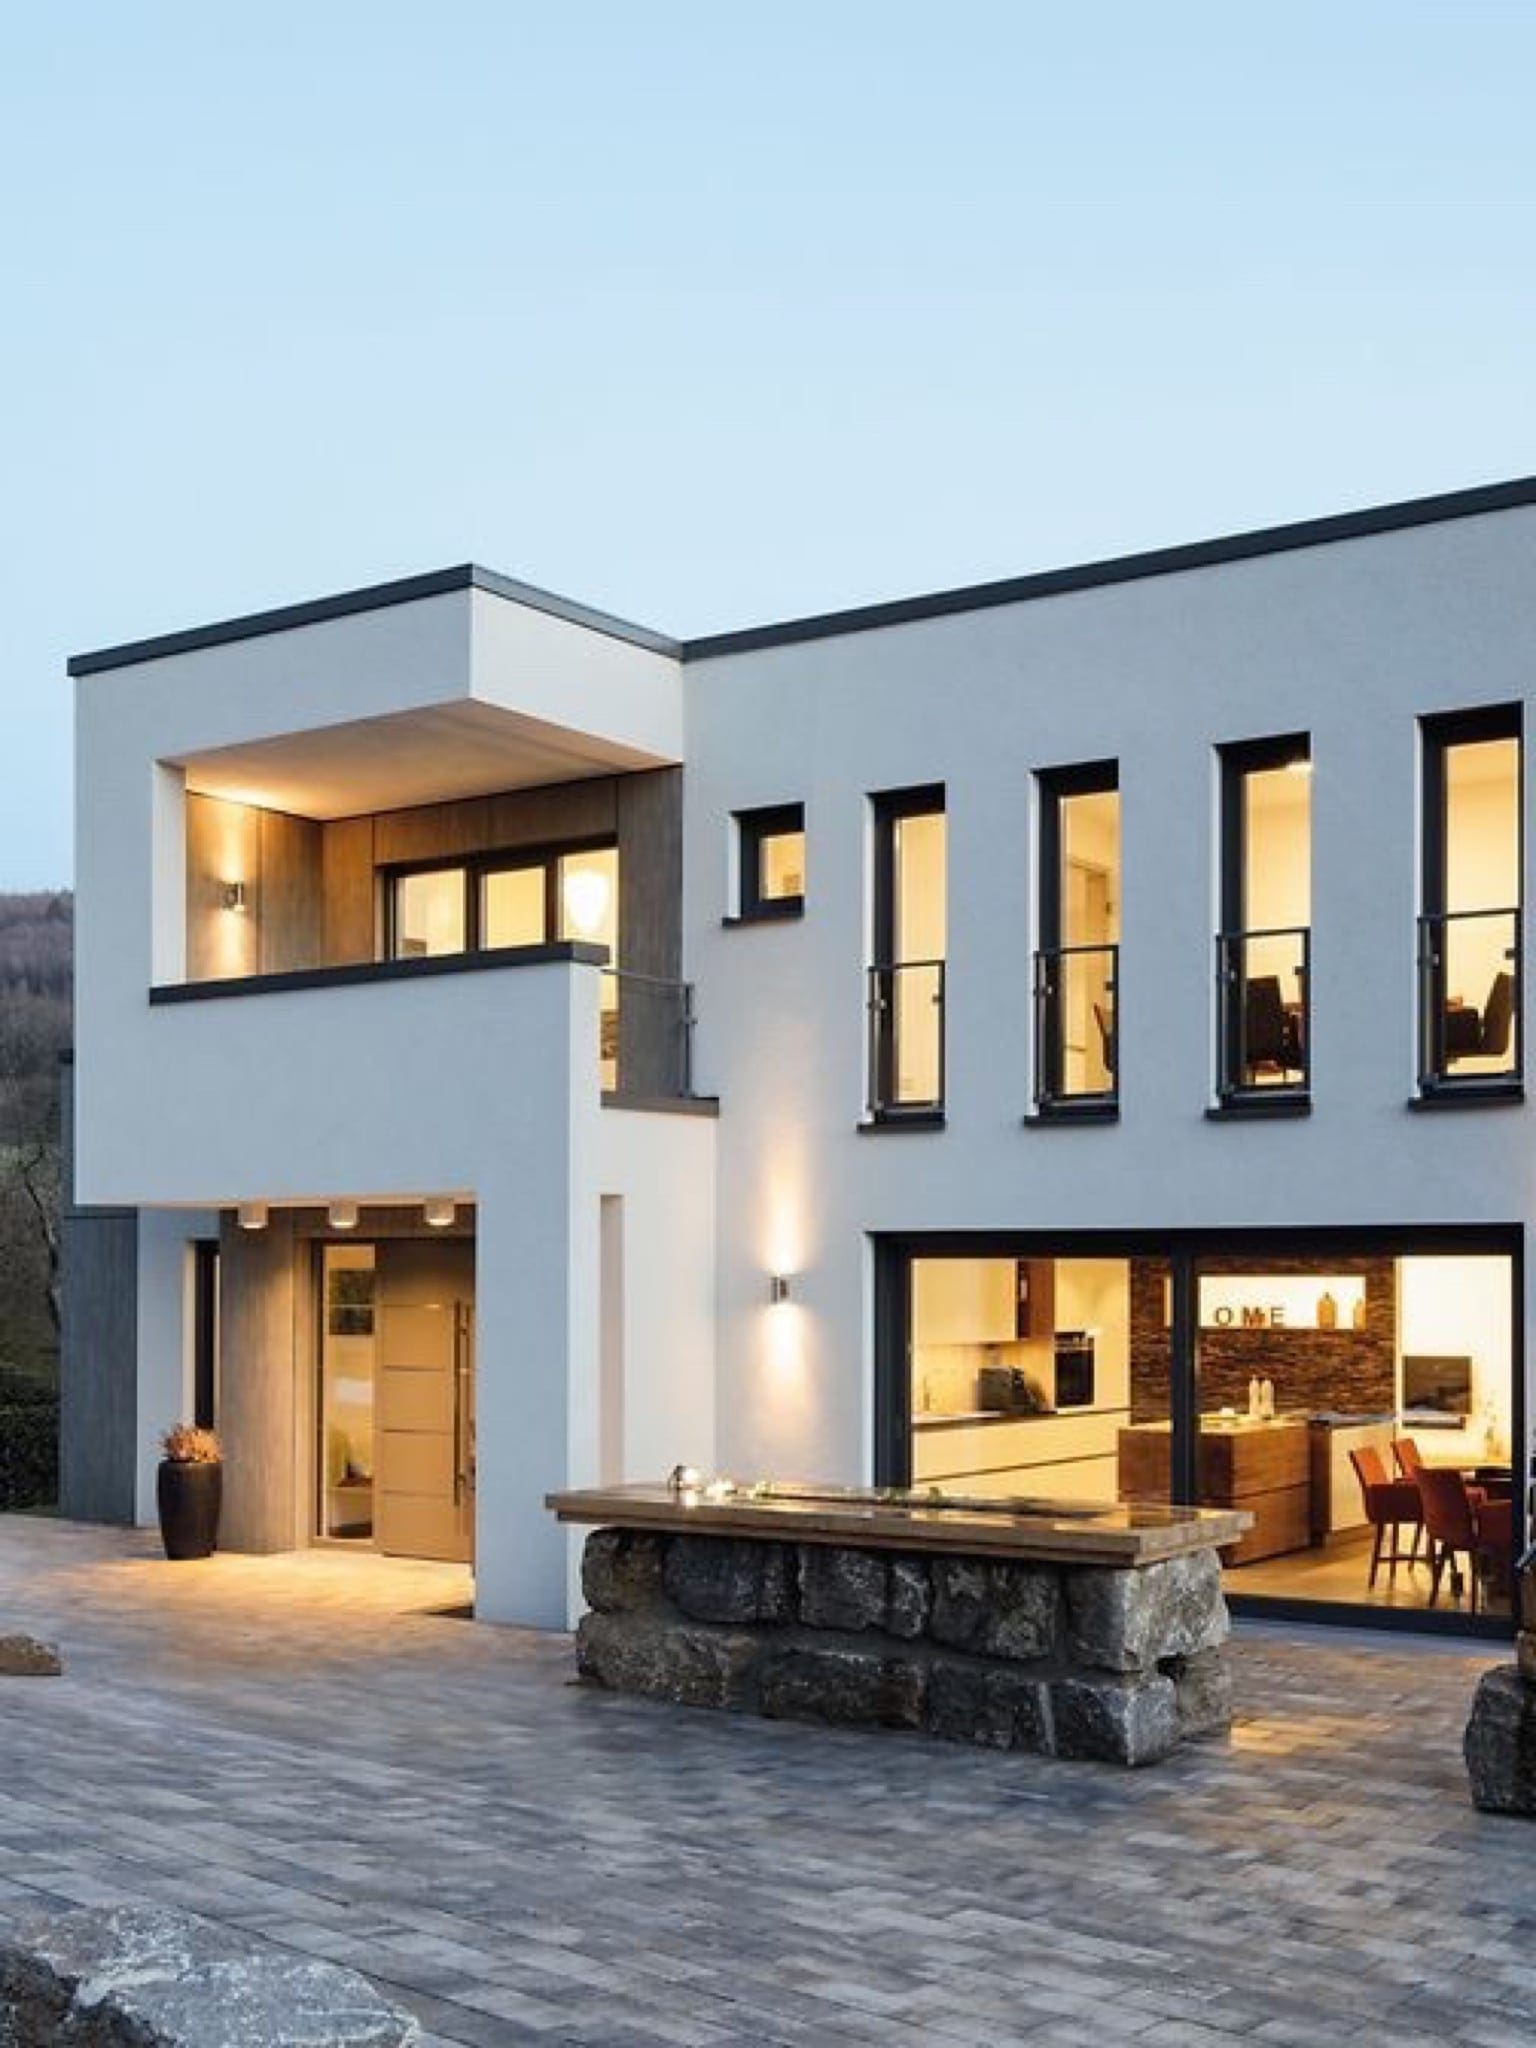 fenster5 image copy - Soluțiile Smart Home de la Schüco, pentru confort, siguranță și eficiență energetică